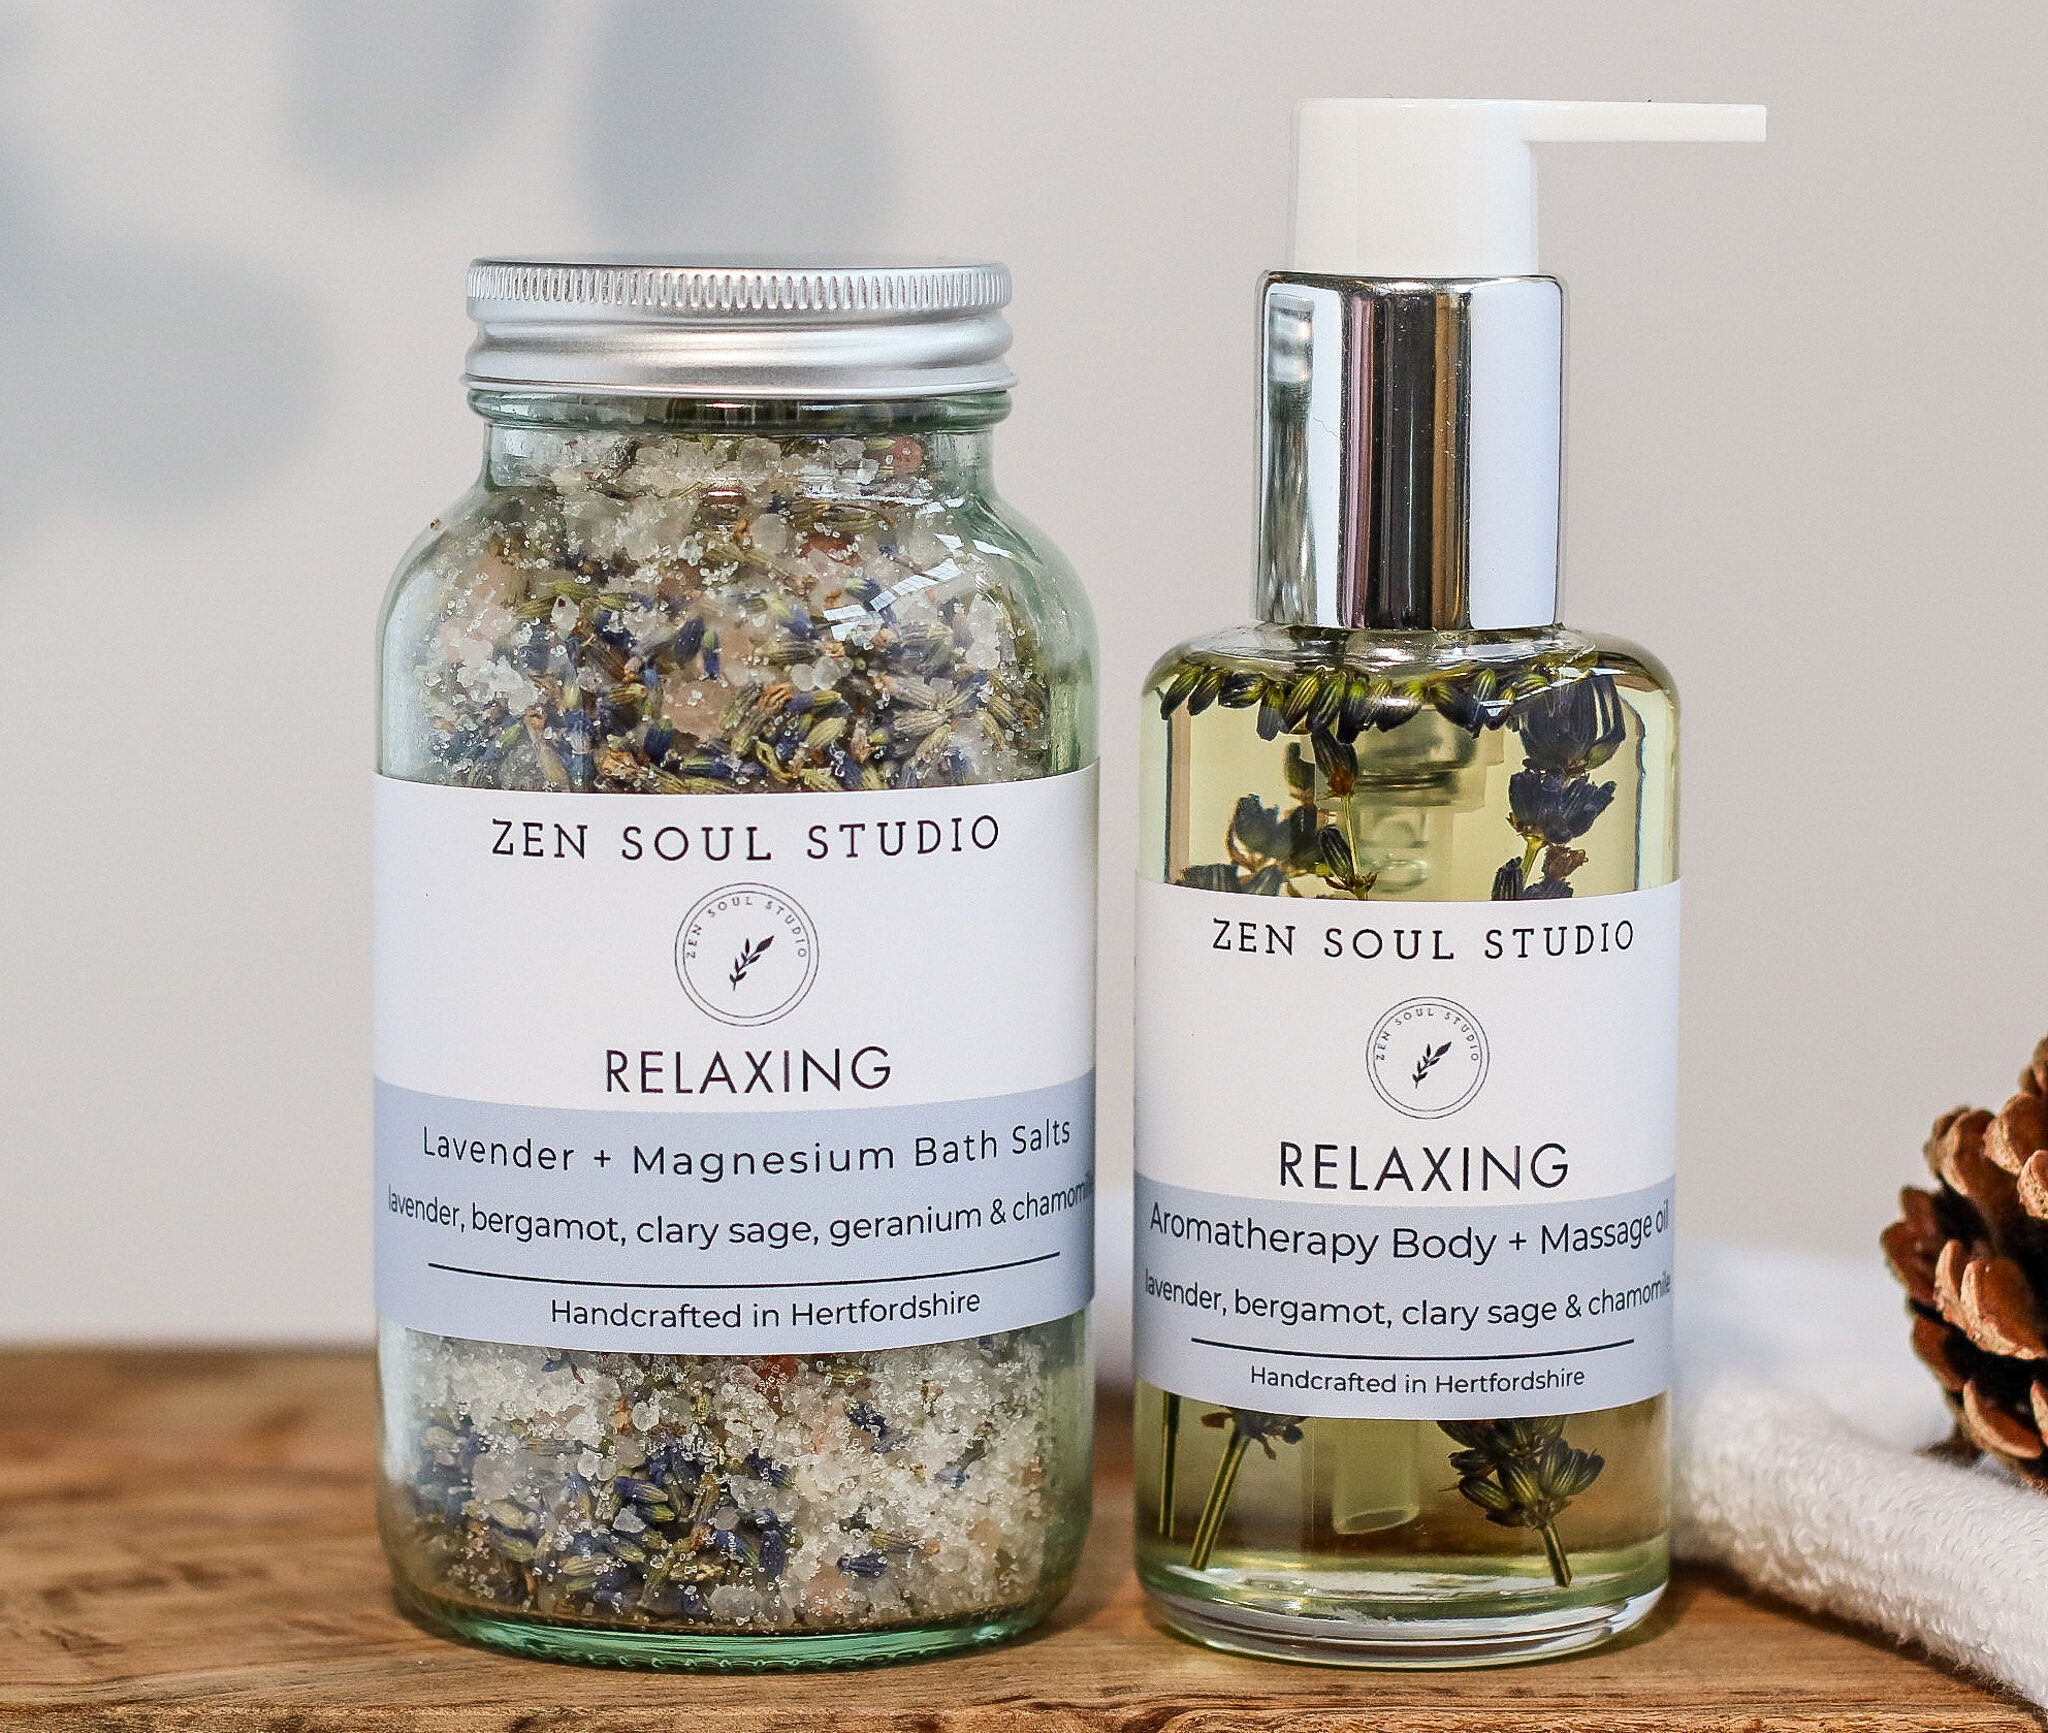 Relaxing Aromatherapy Body + Bath oil + Bath salts